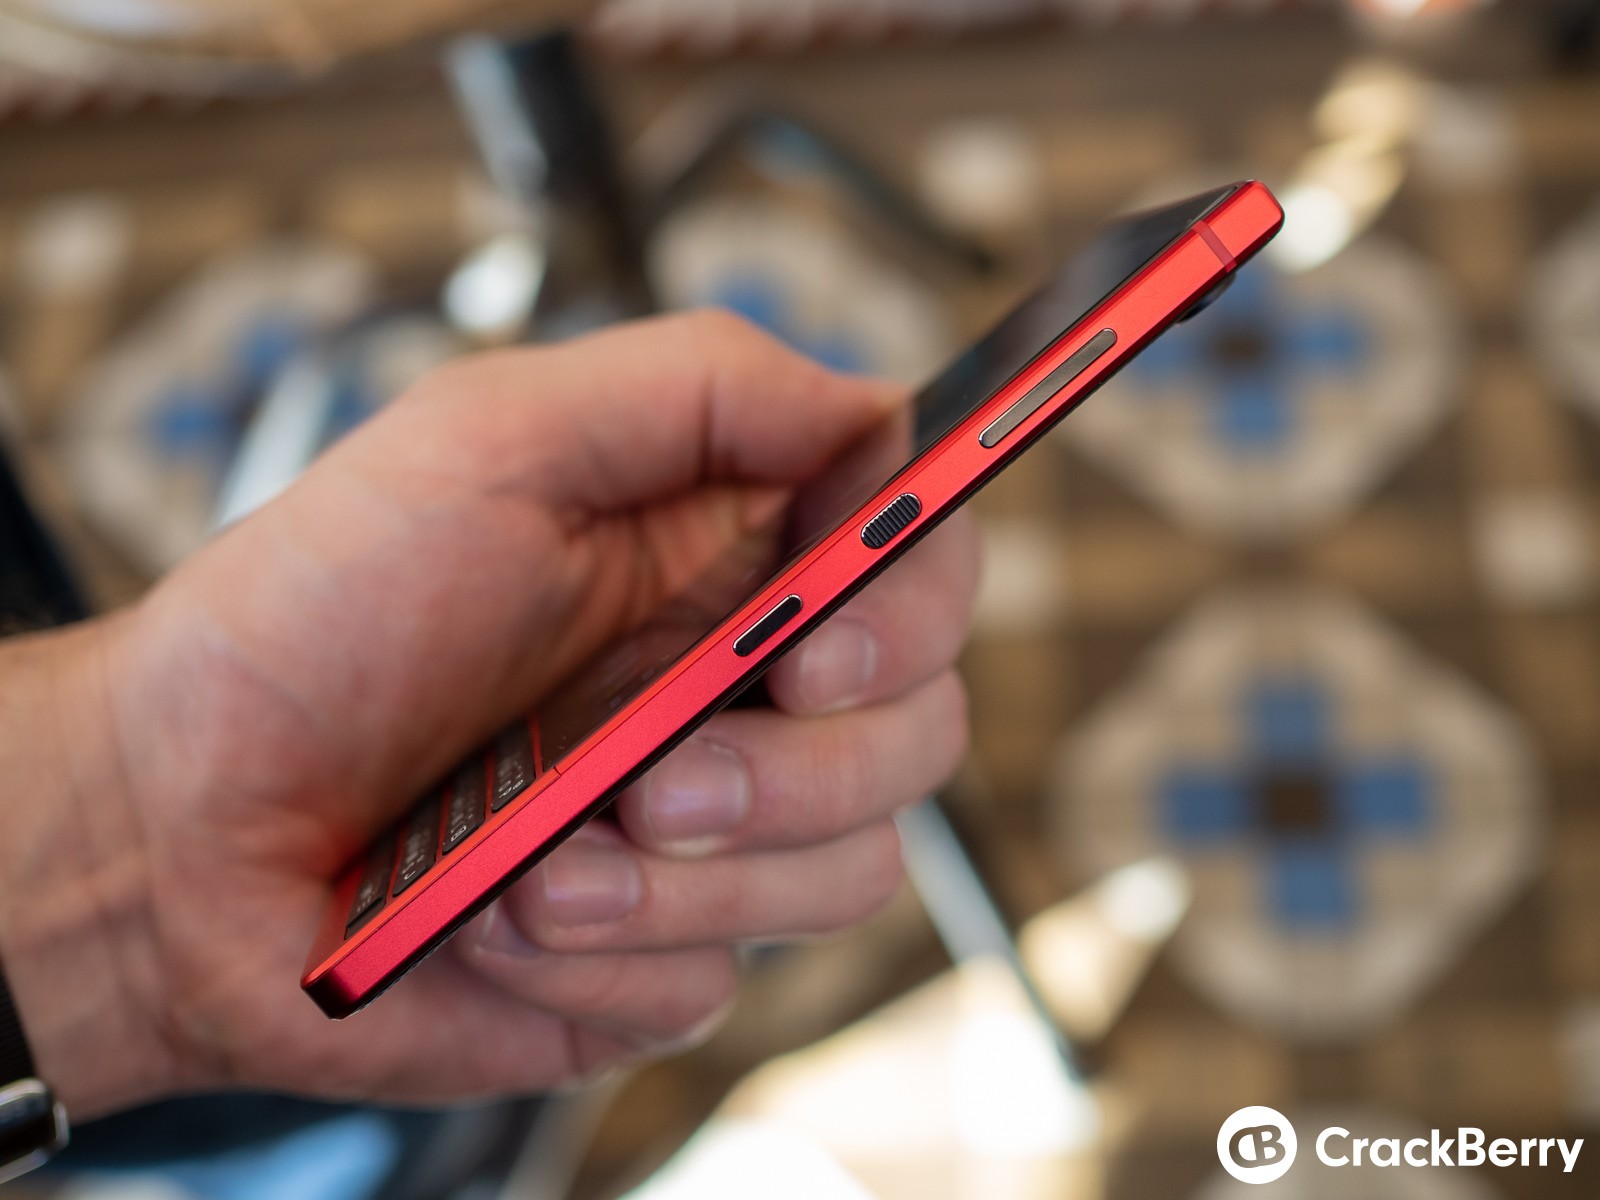 [MWC 2019] BlackBerry giới thiệu KEY2 Red
Edition, phiên bản đặc biệt của KEY2